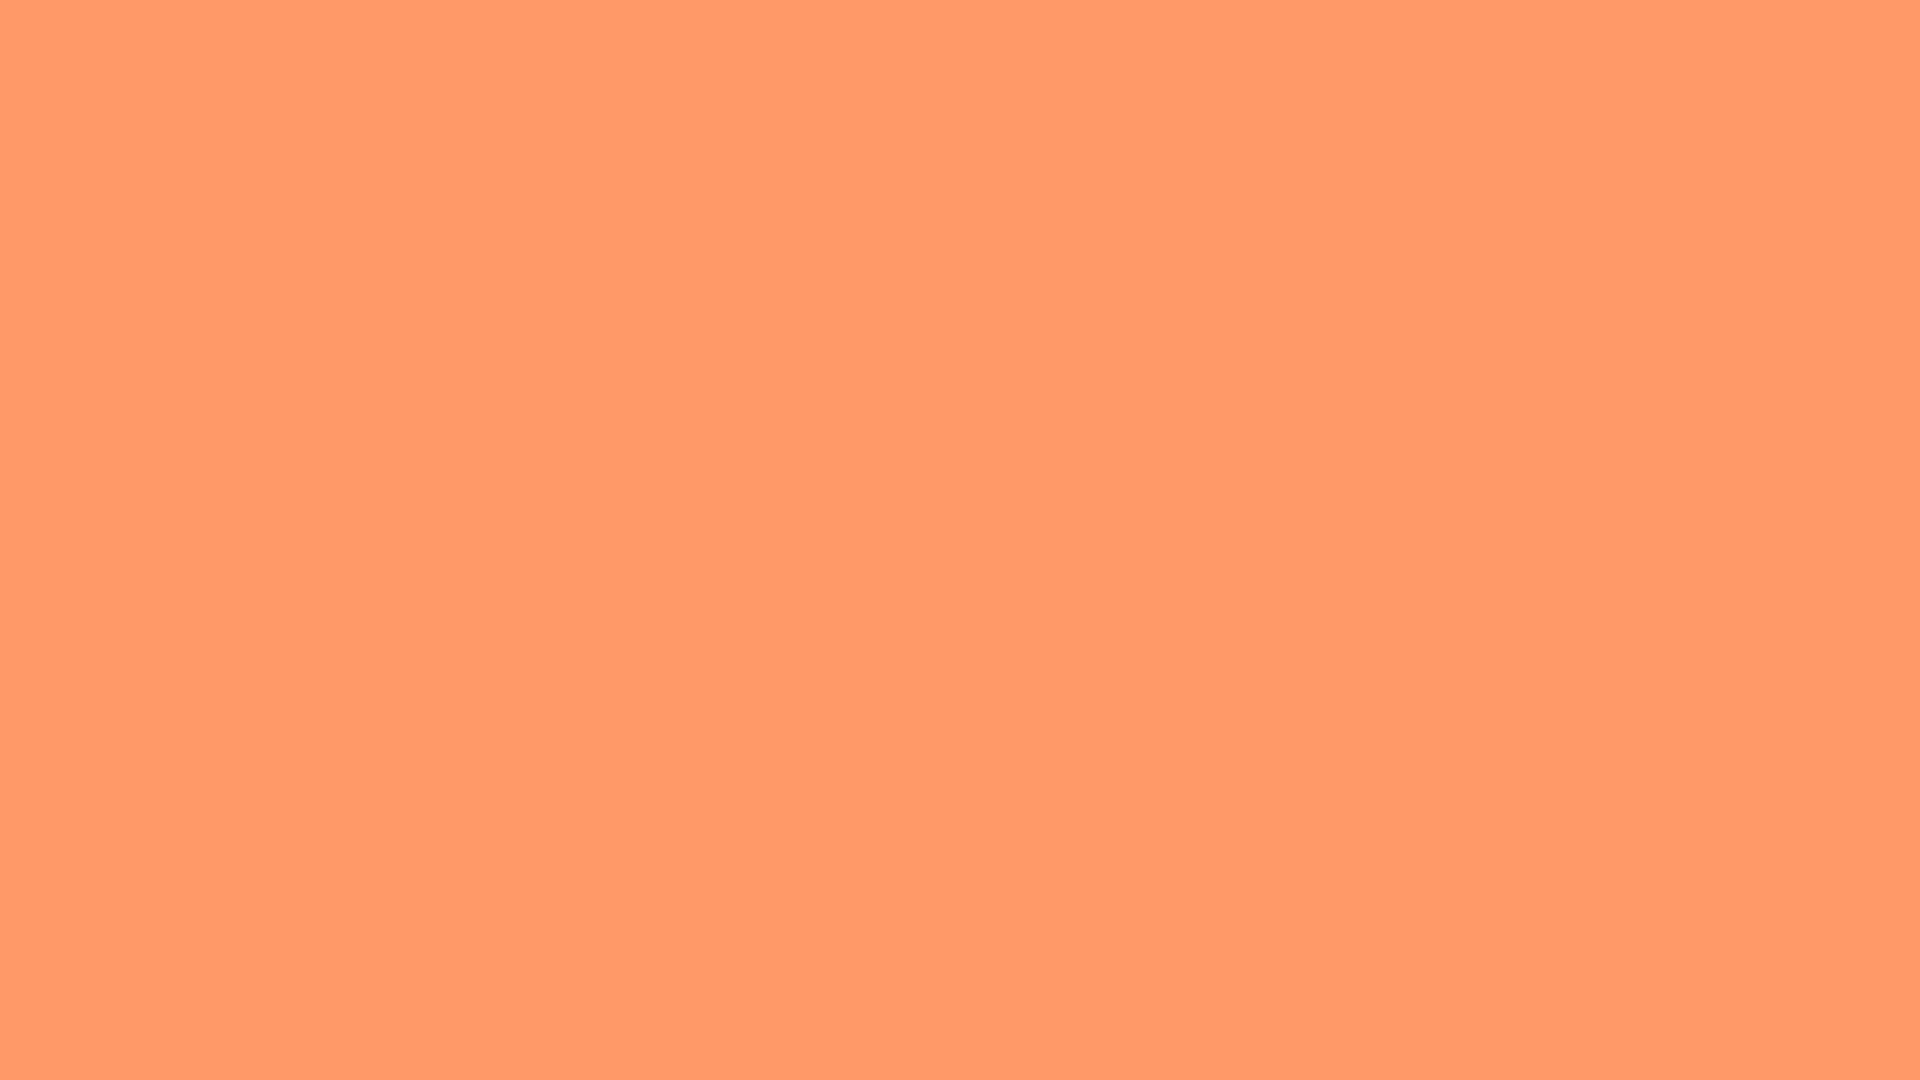 46 Bright Orange Wallpaper  WallpaperSafari